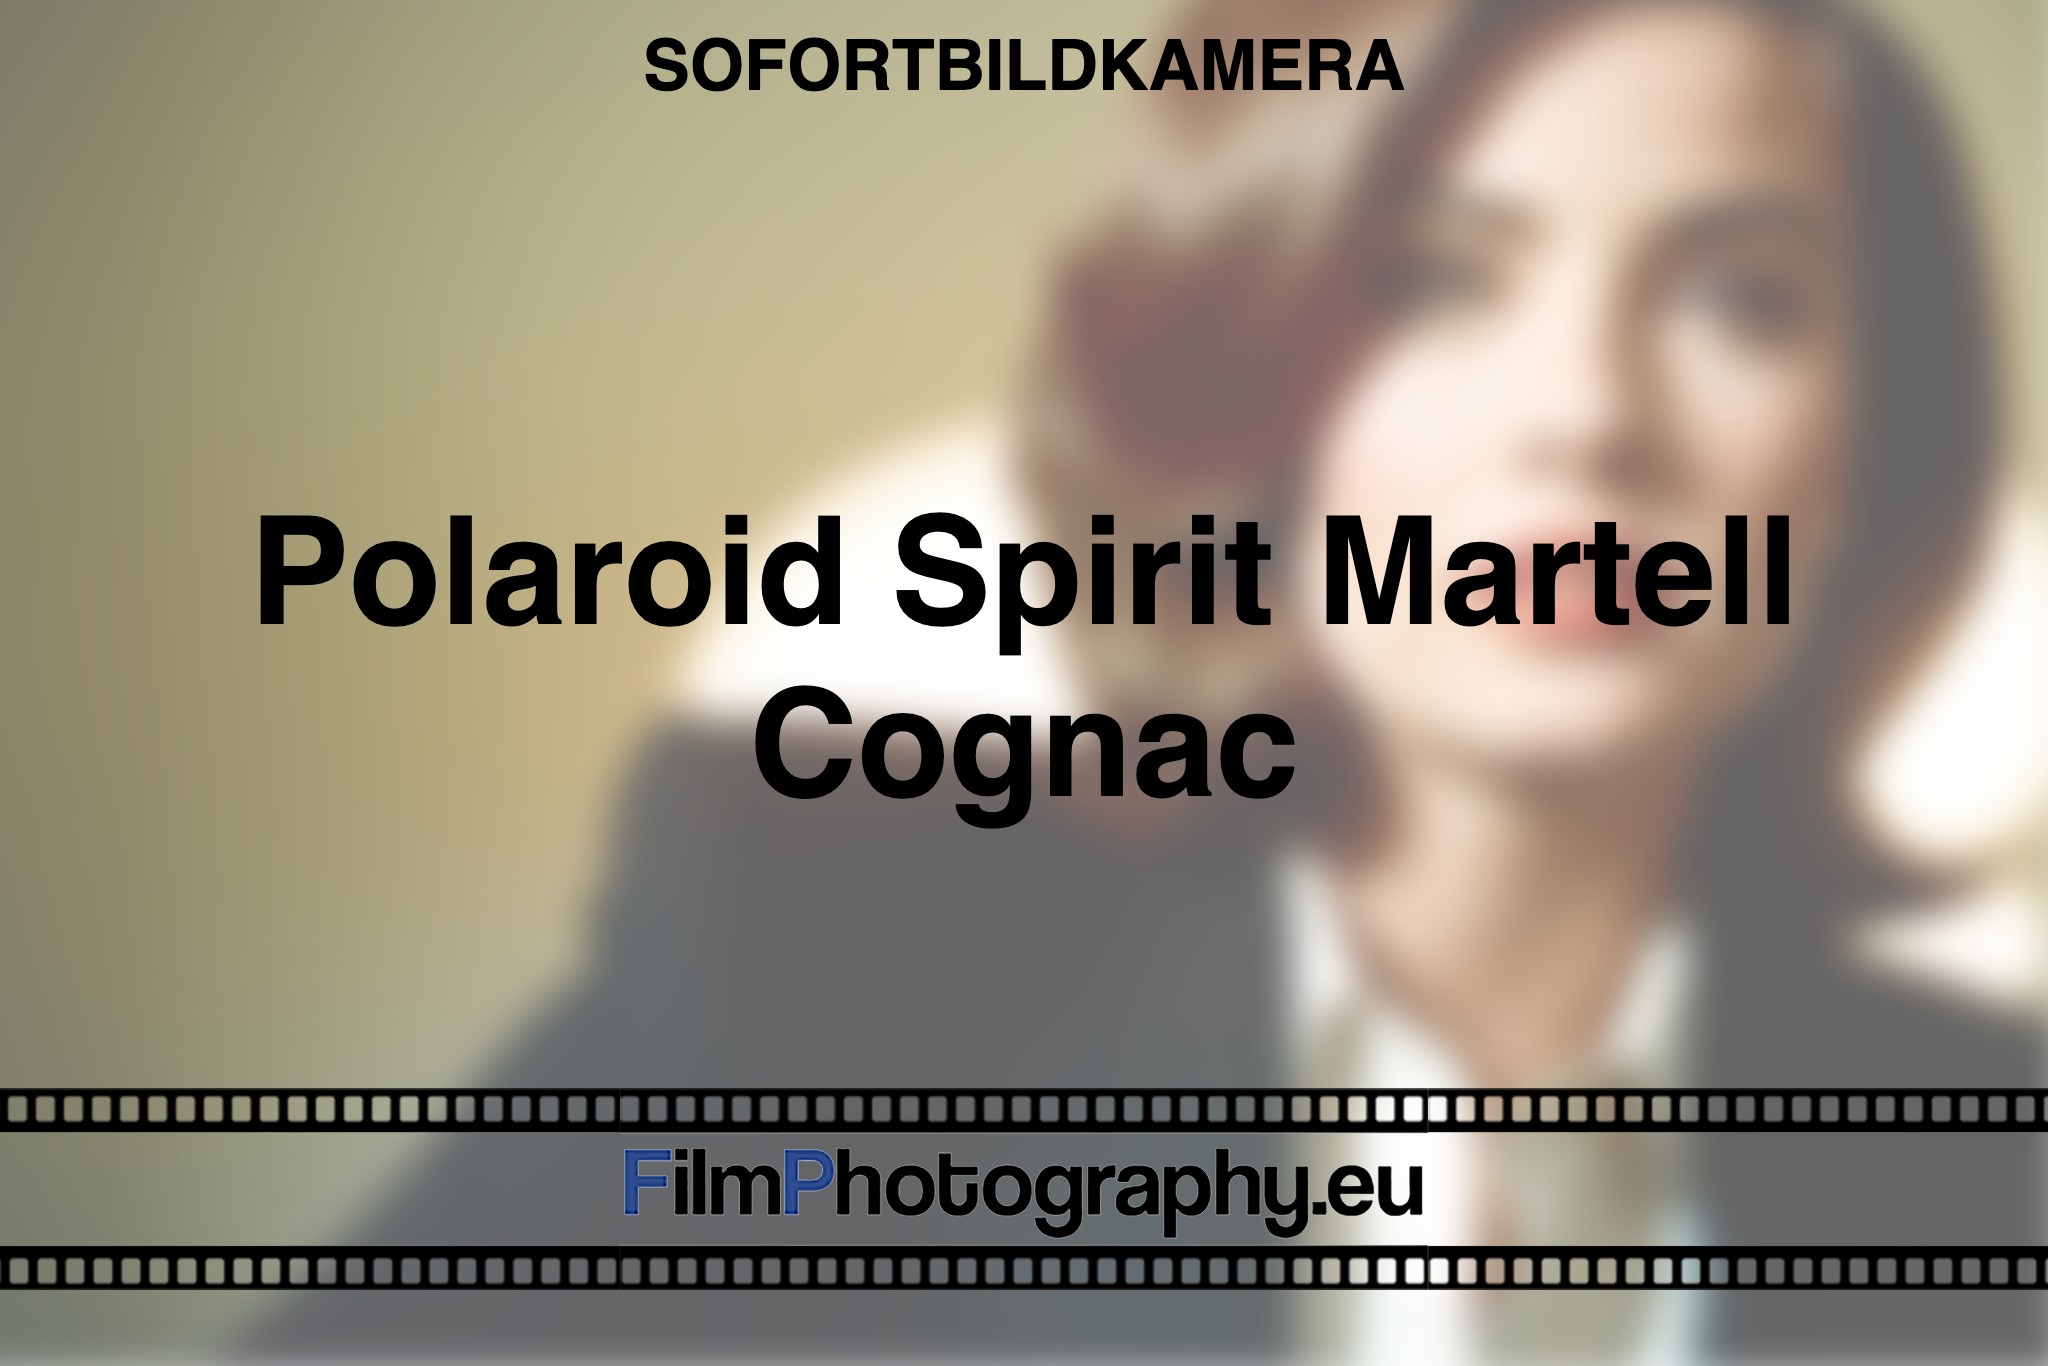 polaroid-spirit-martell-cognac-sofortbildkamera-bnv